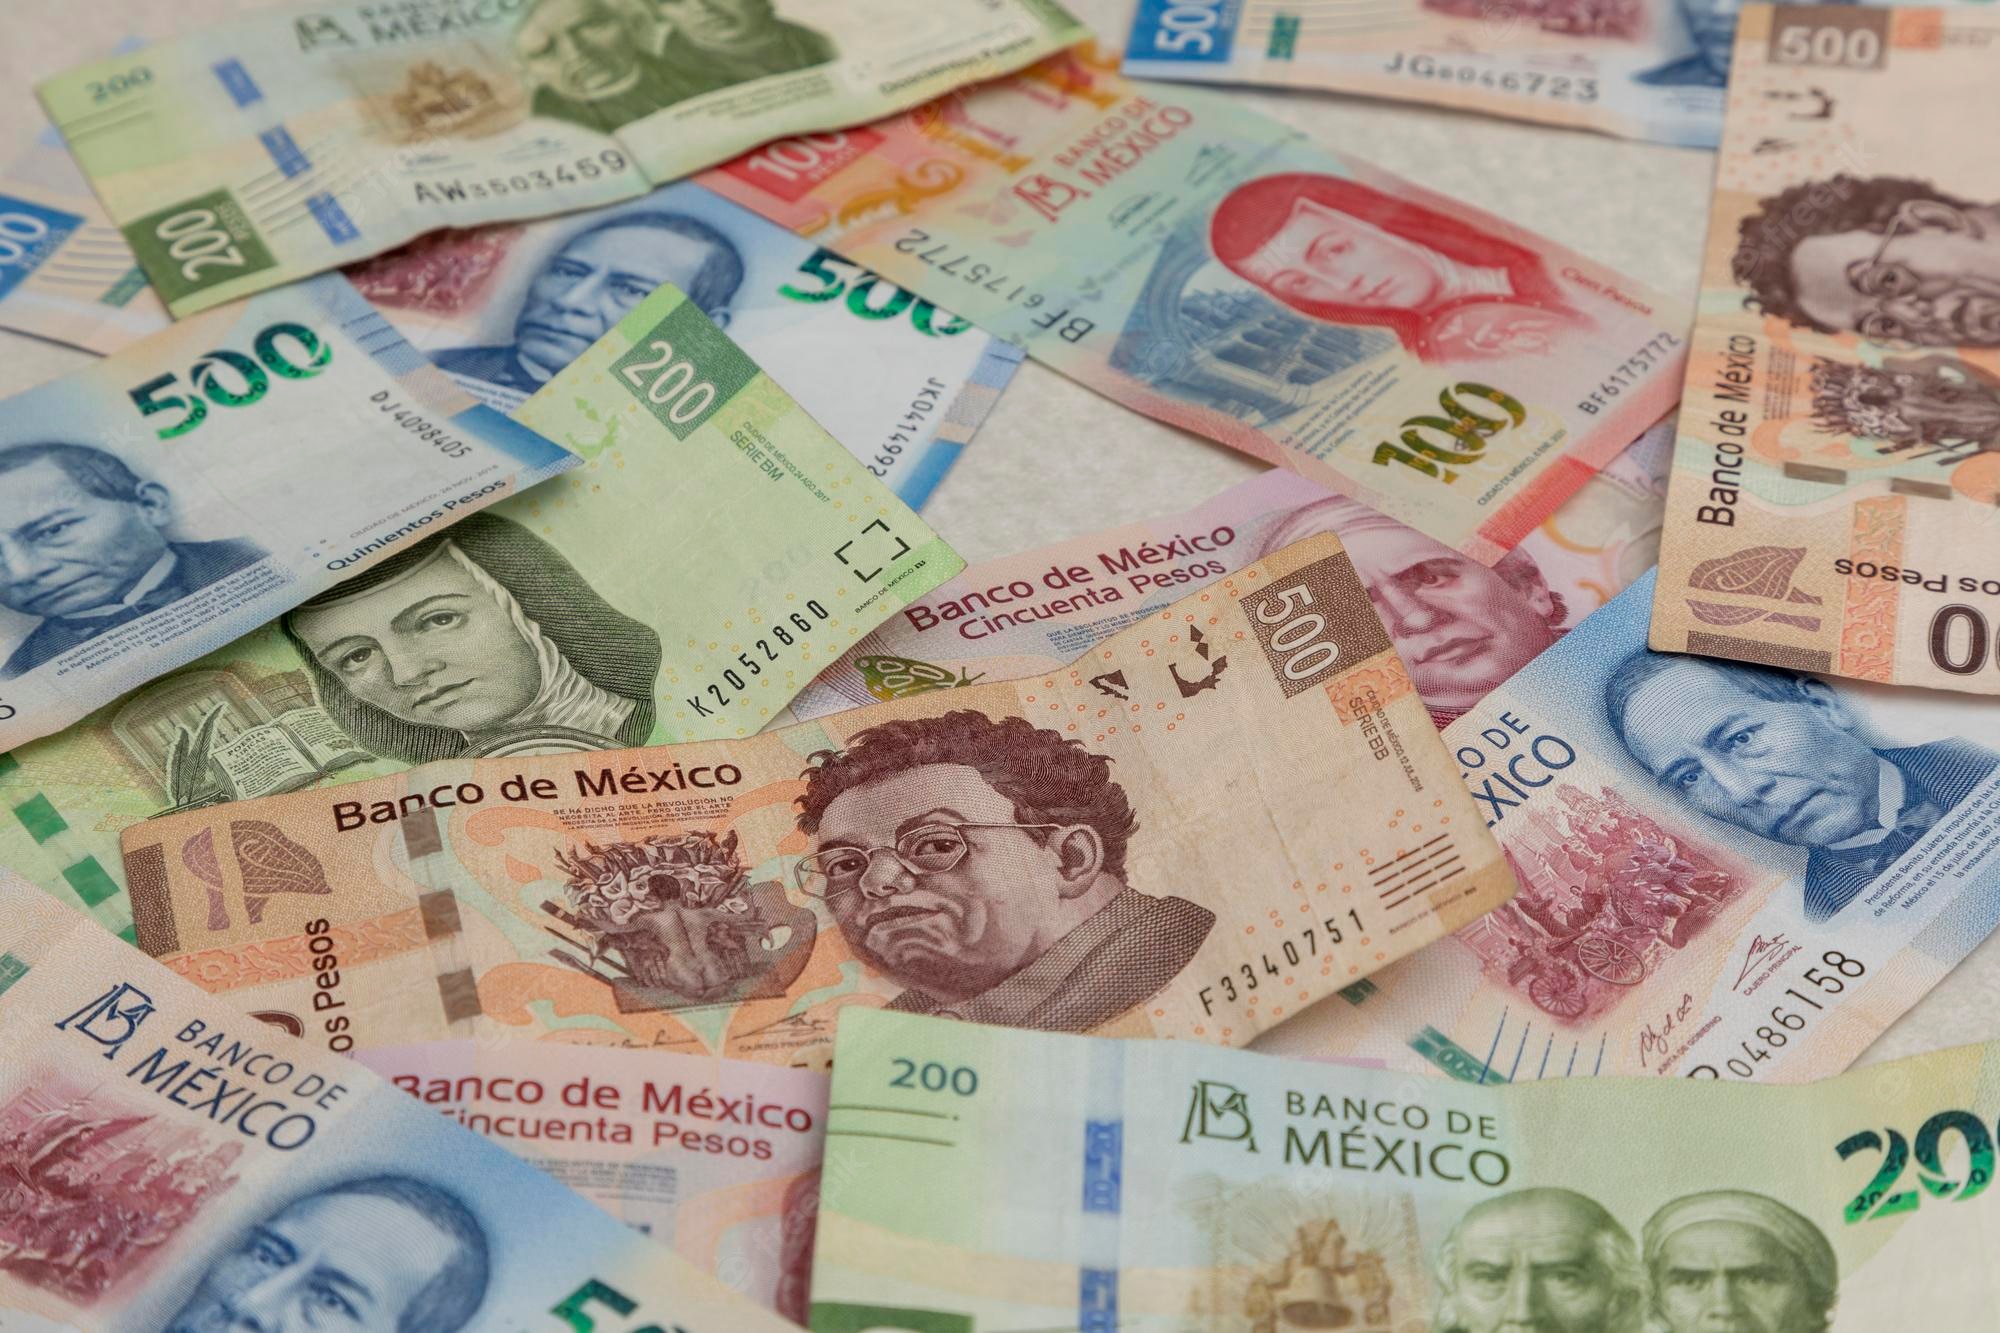 Los billetes de la familia D1, lanzados hace 21 años, fue la primera en la que se incorporó a Miguel Hidalgo en la denominación de mil pesos, dejarán de circular a partir de 2023.